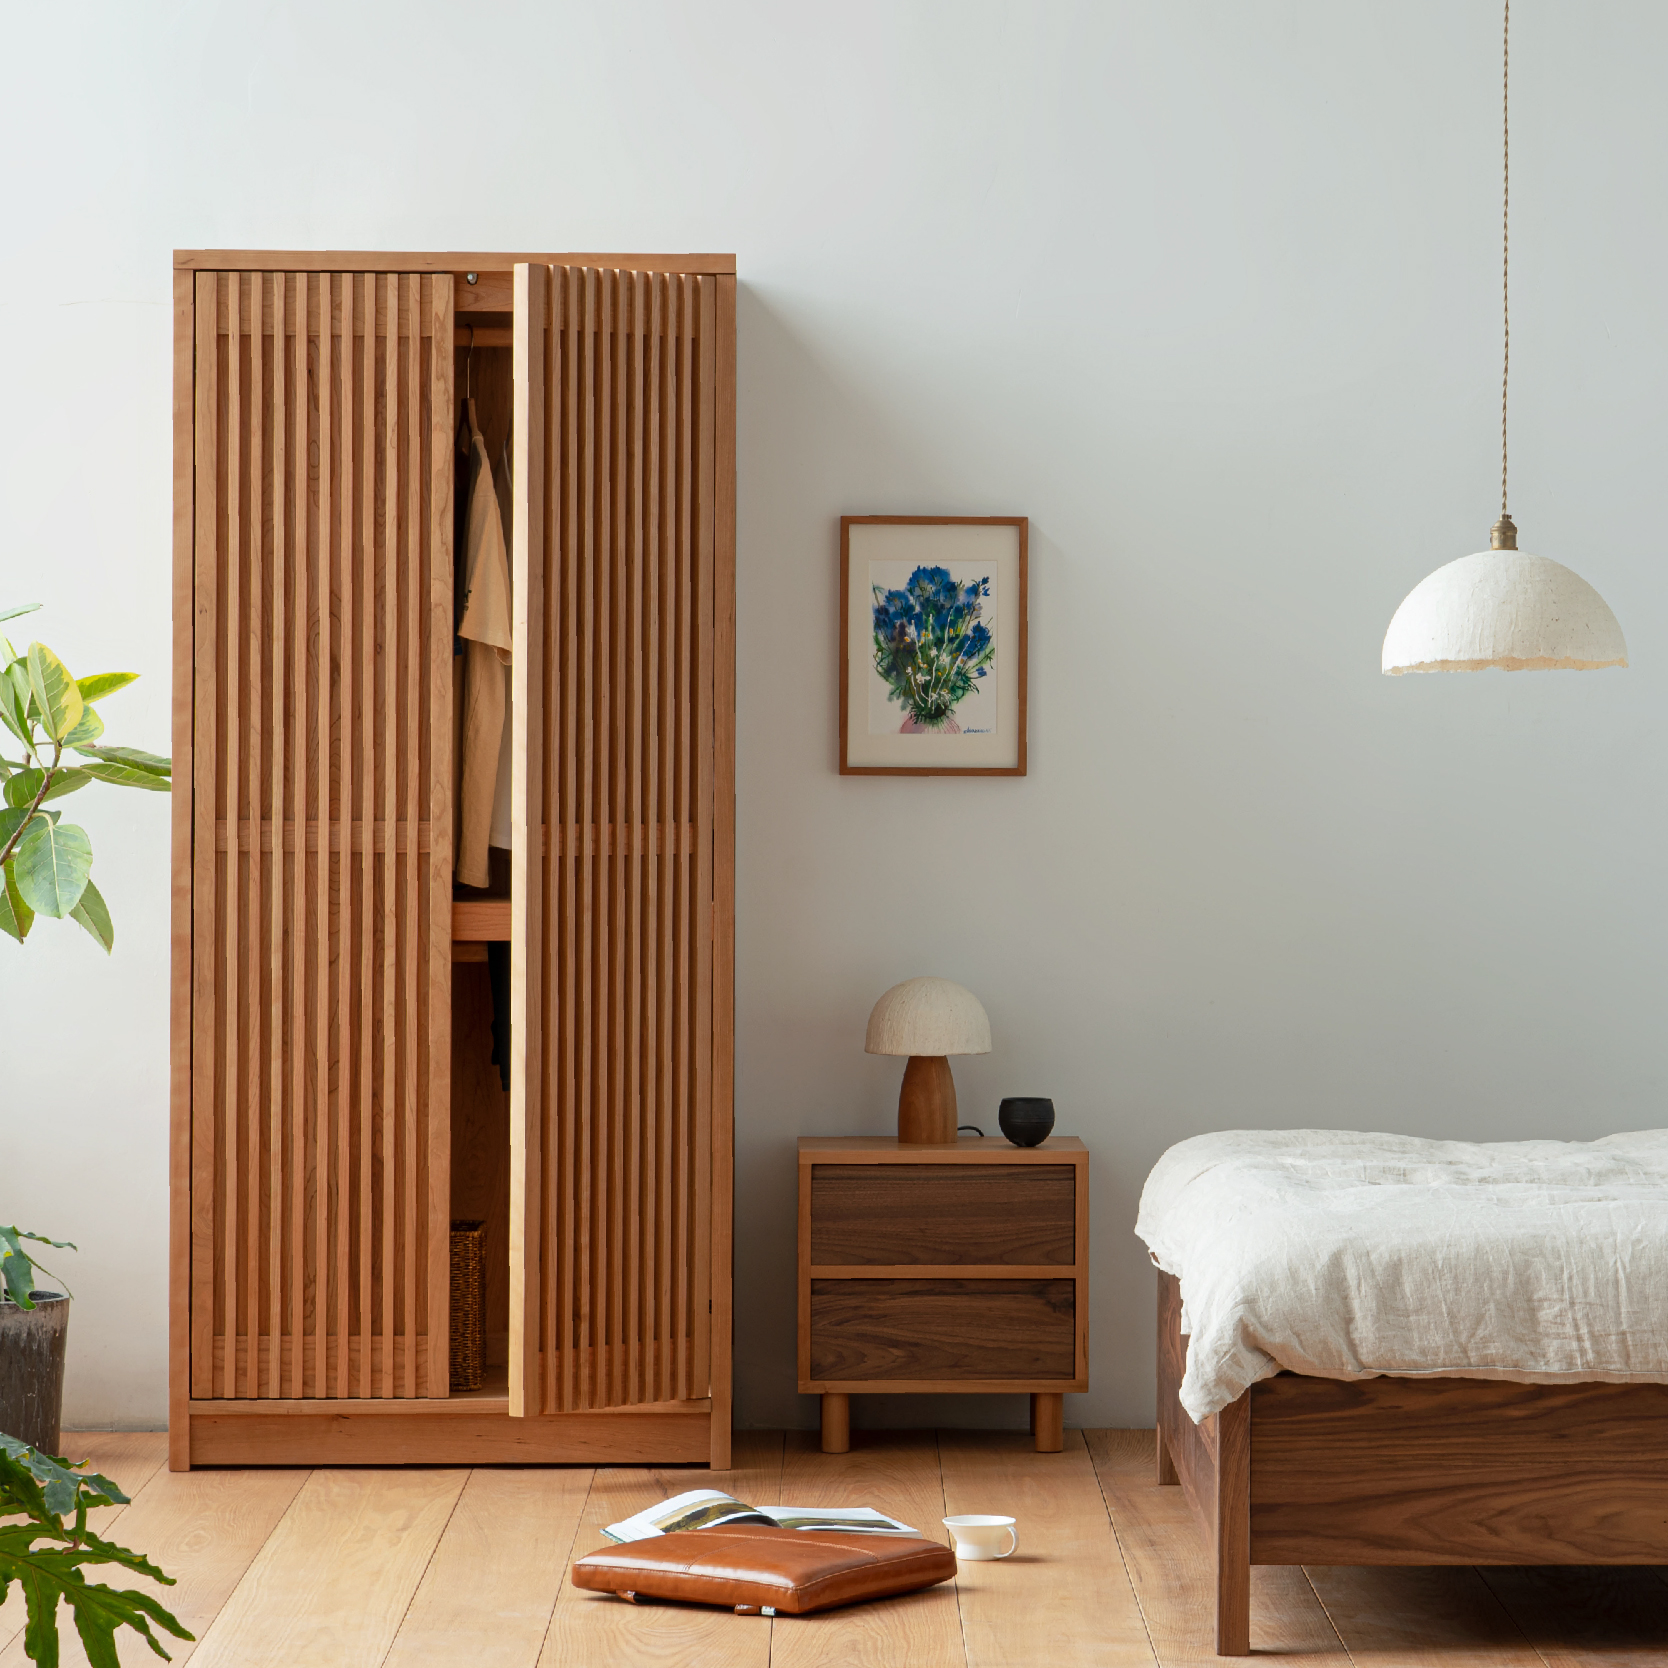 MUMO木墨 栅格衣柜 全实木卧室家具现代简约北欧柜子家用储柜衣柜